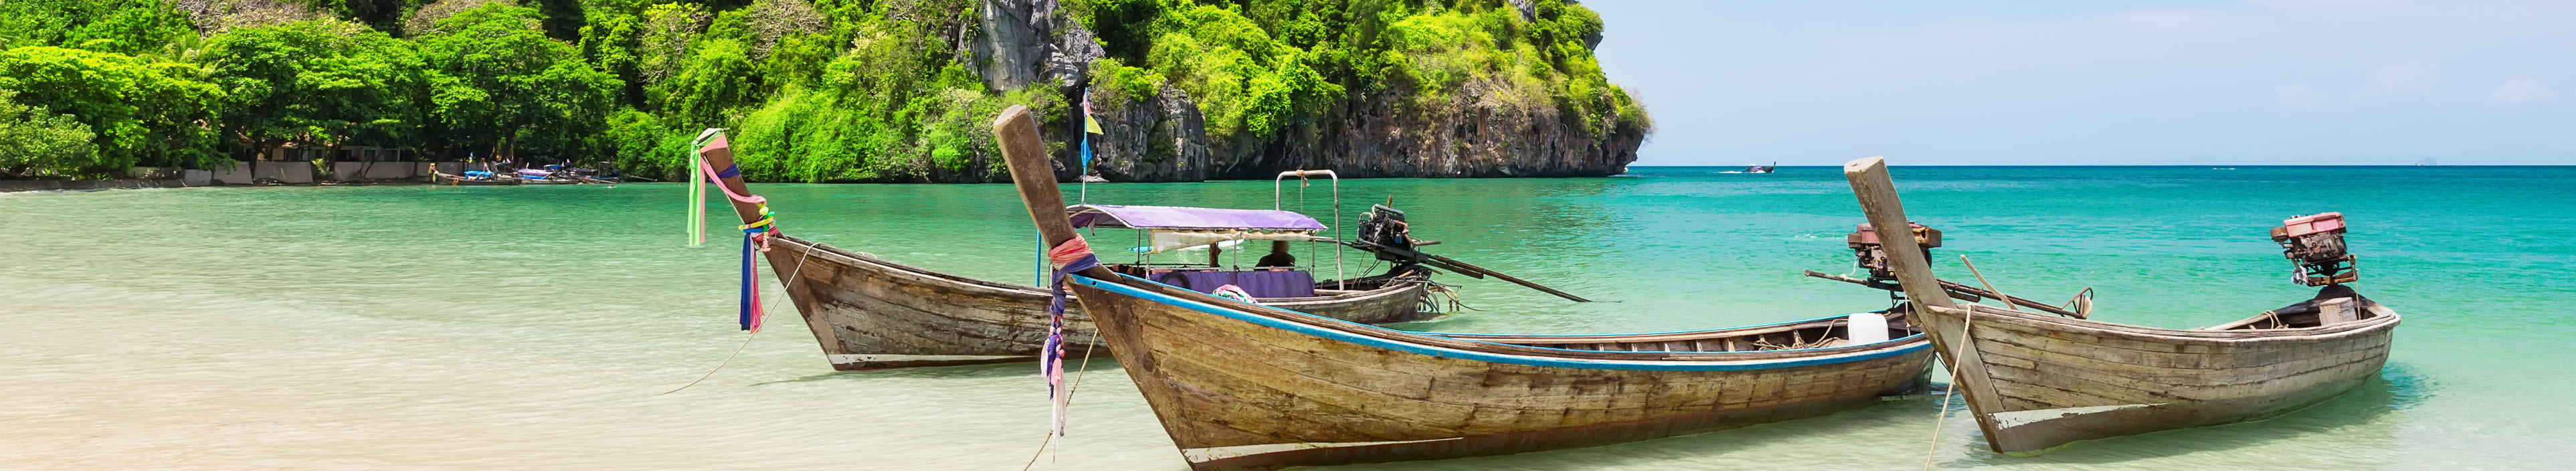 Traditionelle thailändische Holzboote am Strand von Phuket.